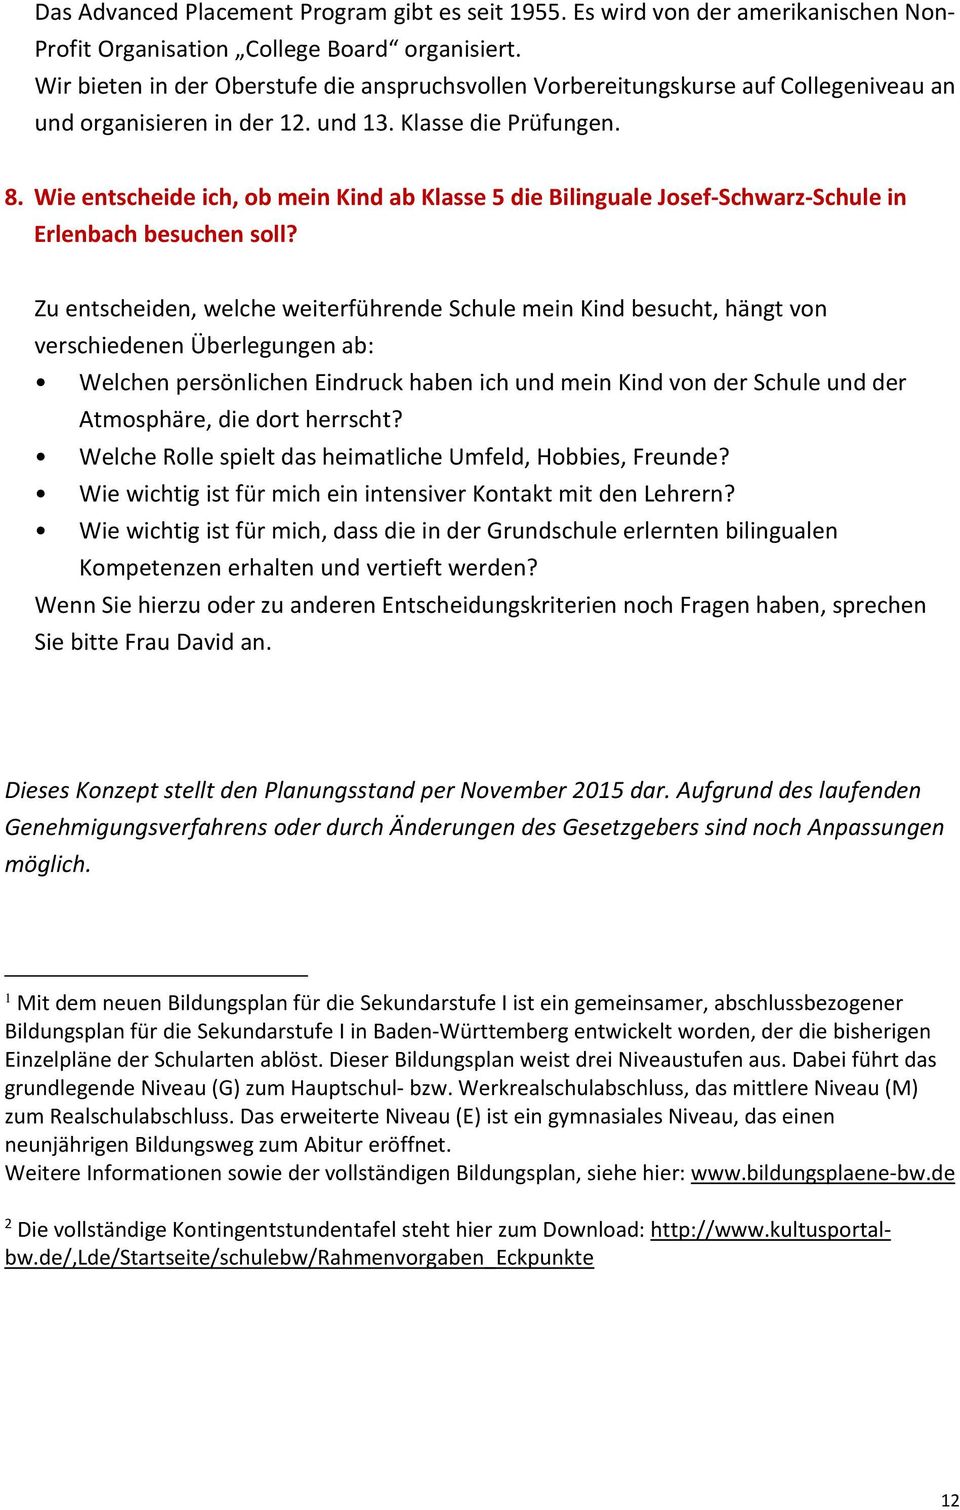 Wie entscheide ich, ob mein Kind ab Klasse 5 die Bilinguale Josef-Schwarz-Schule in Erlenbach besuchen soll?